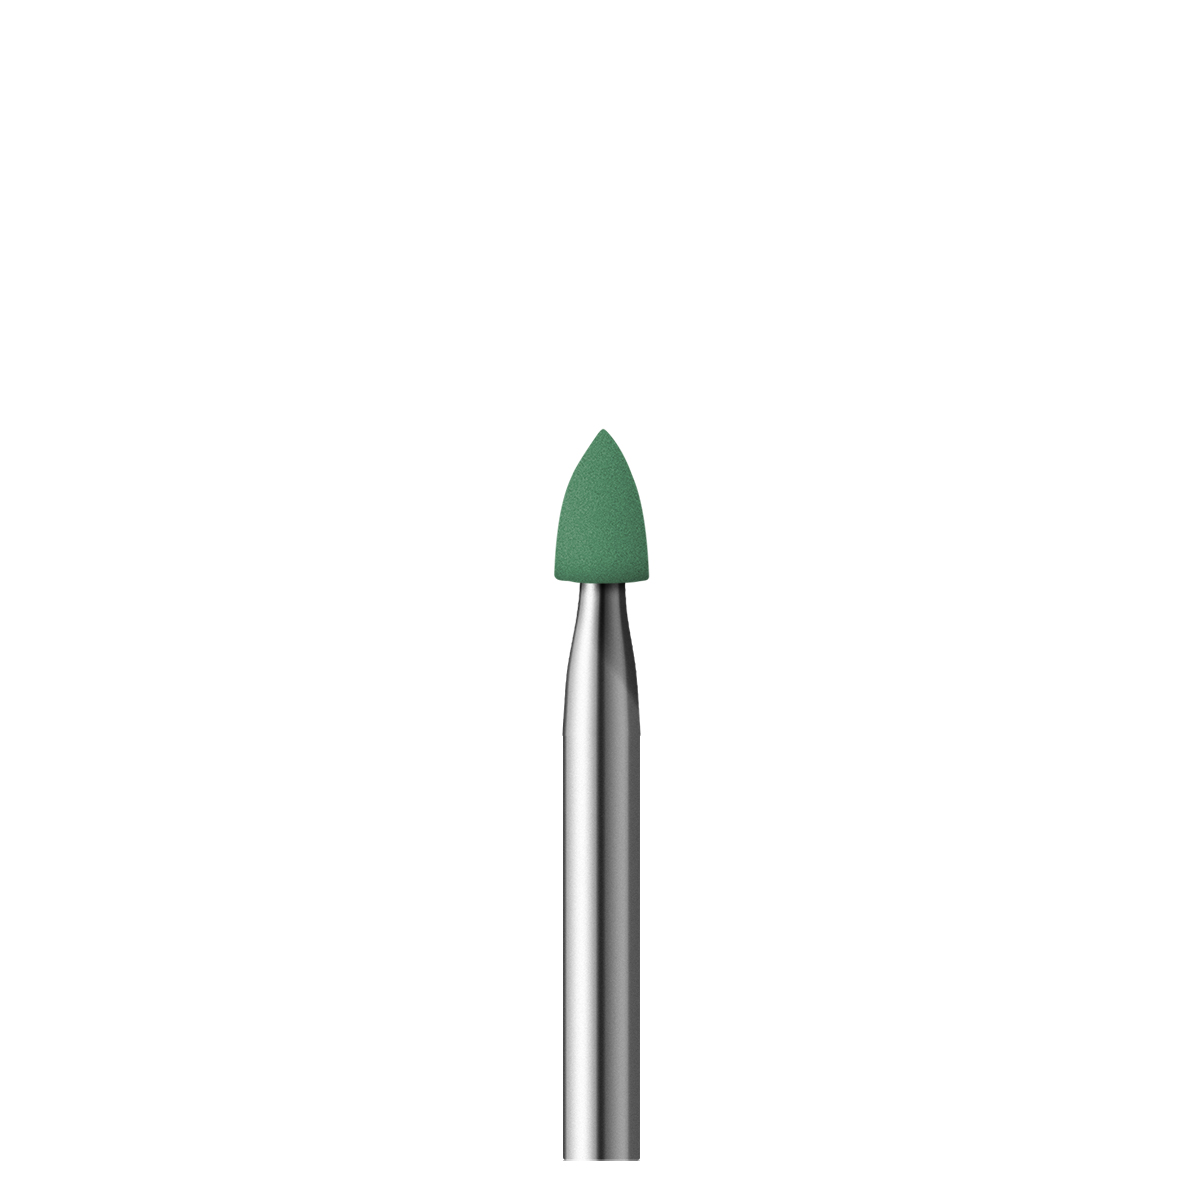 Polierer Alphaflex, grün, Spitze, Ø 3 x 6 mm, Korn fein, HP-Schaft
